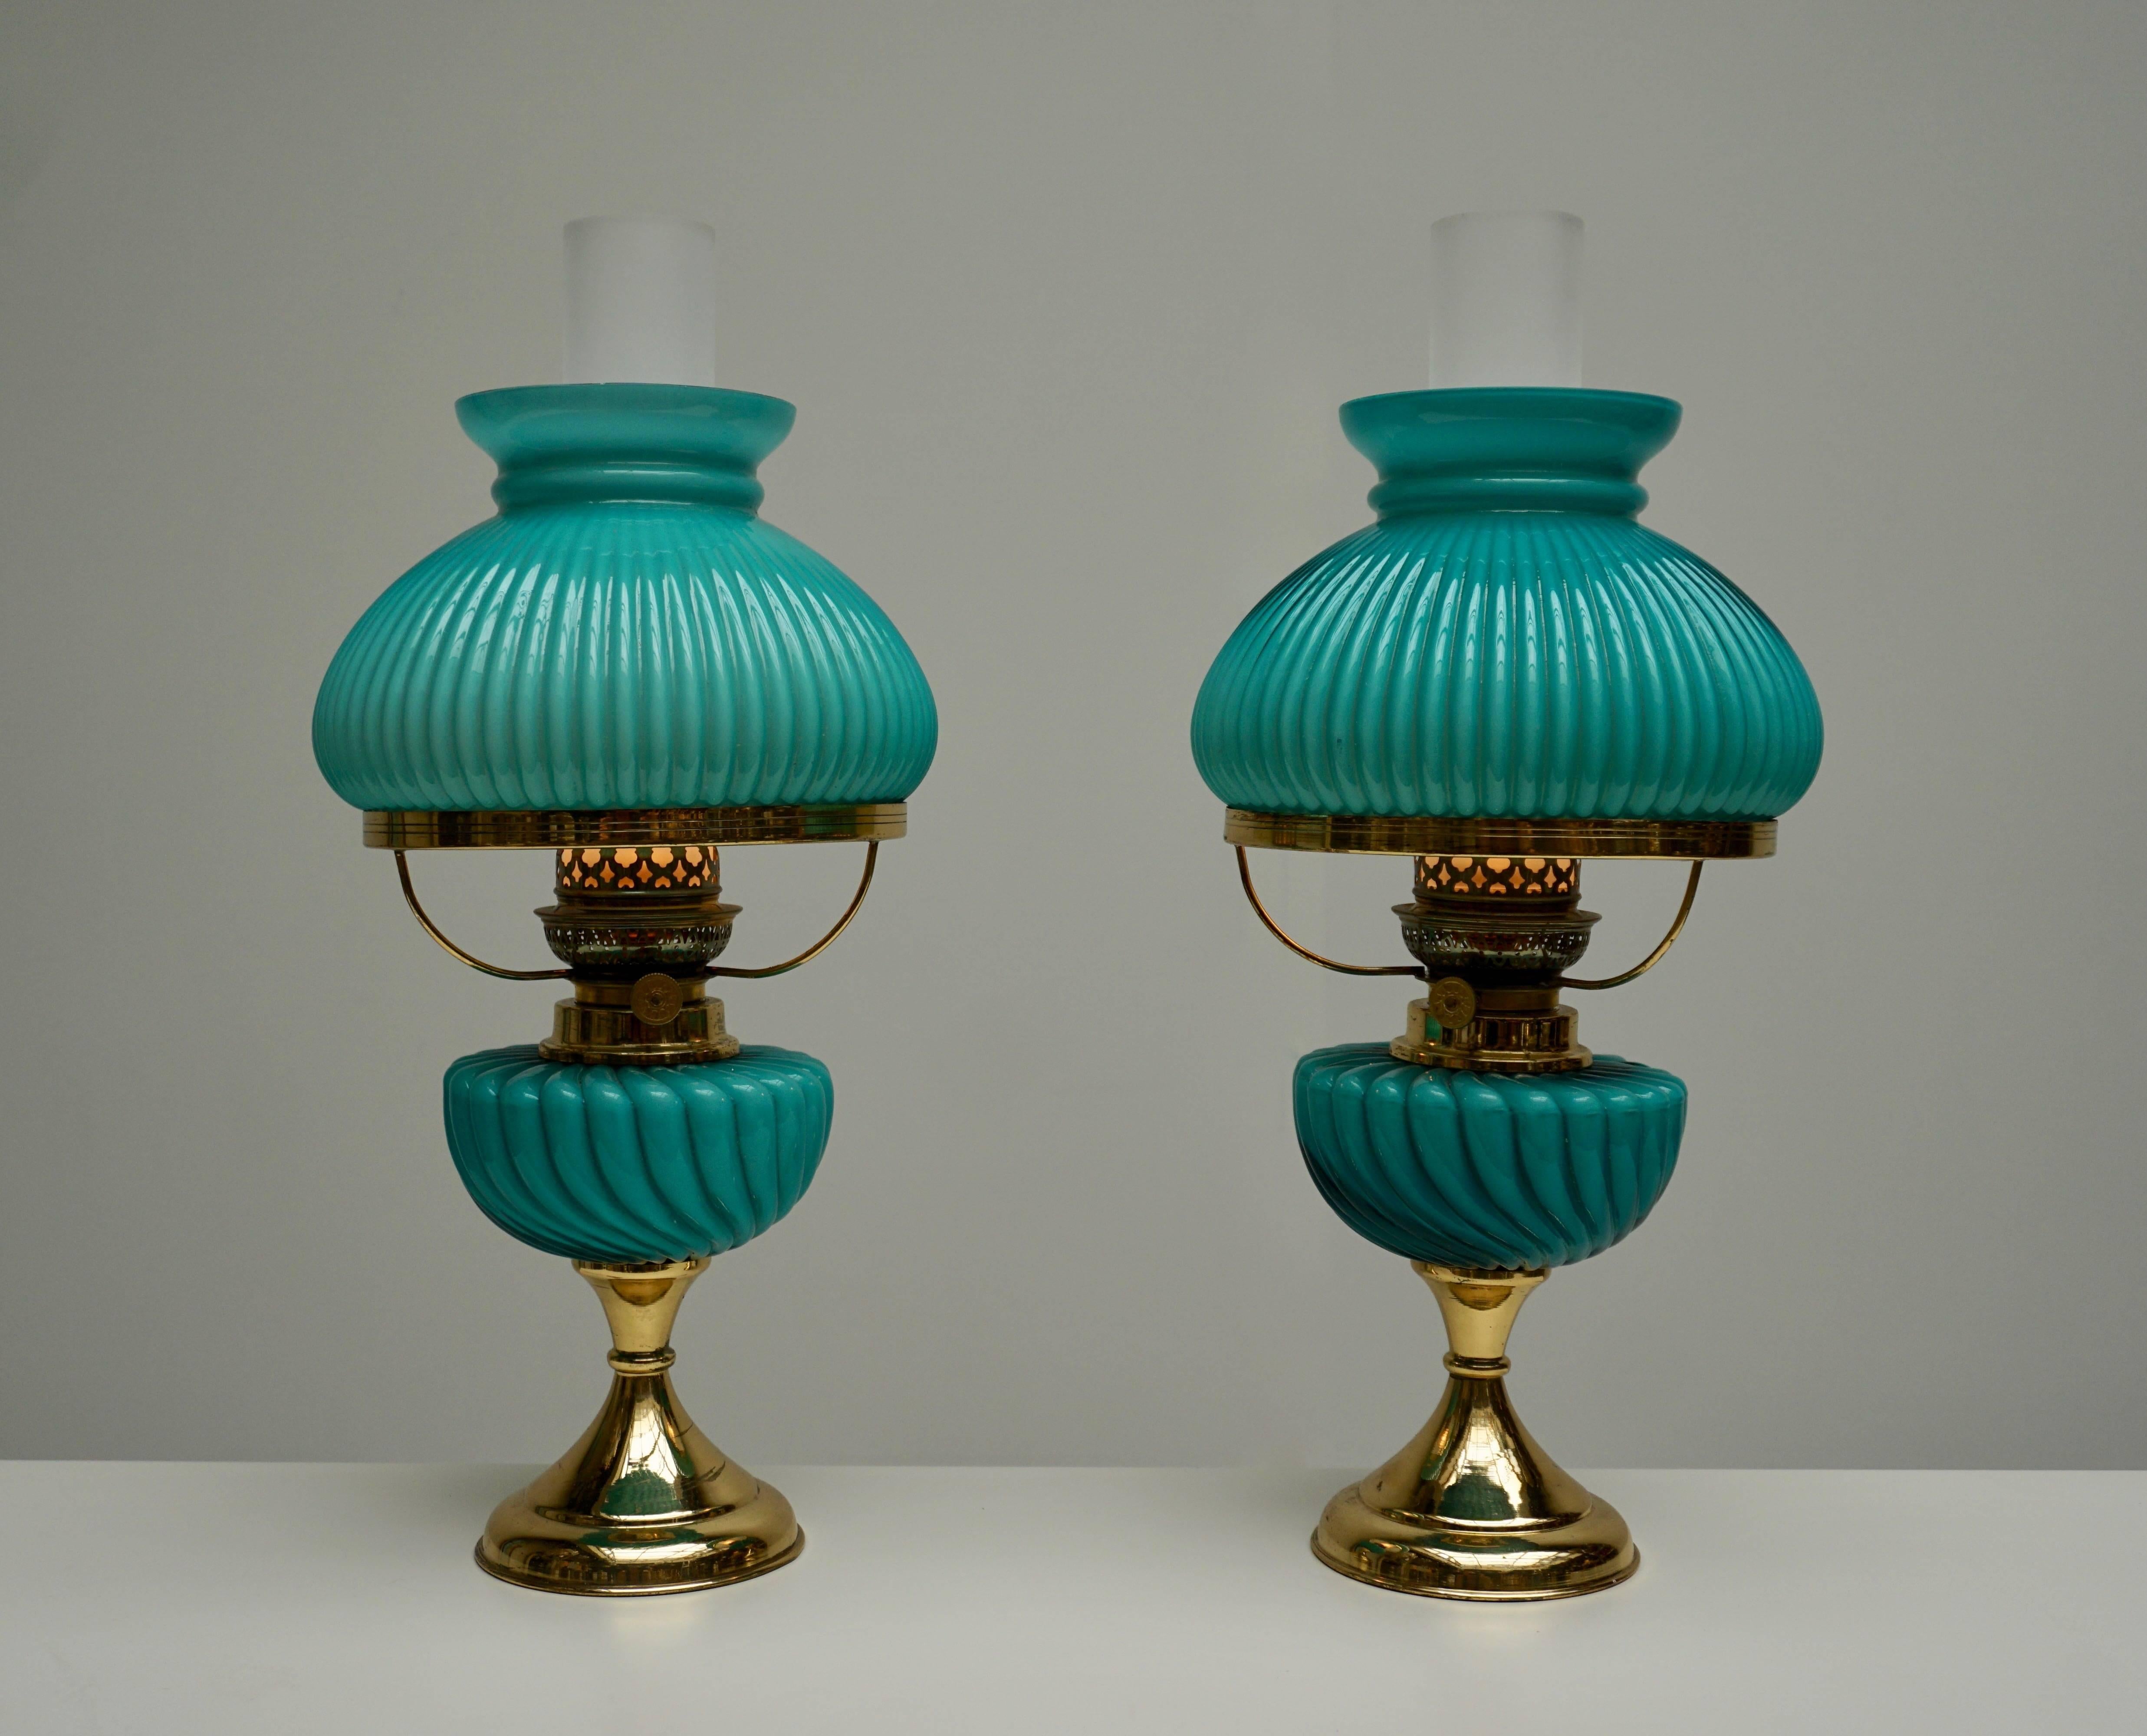 Zwei Tischlampen aus italienischem Muranoglas.
Maße: Durchmesser 20 cm.
Höhe blauer Glasschirm 39 cm.
Eine E14-Glühbirne.